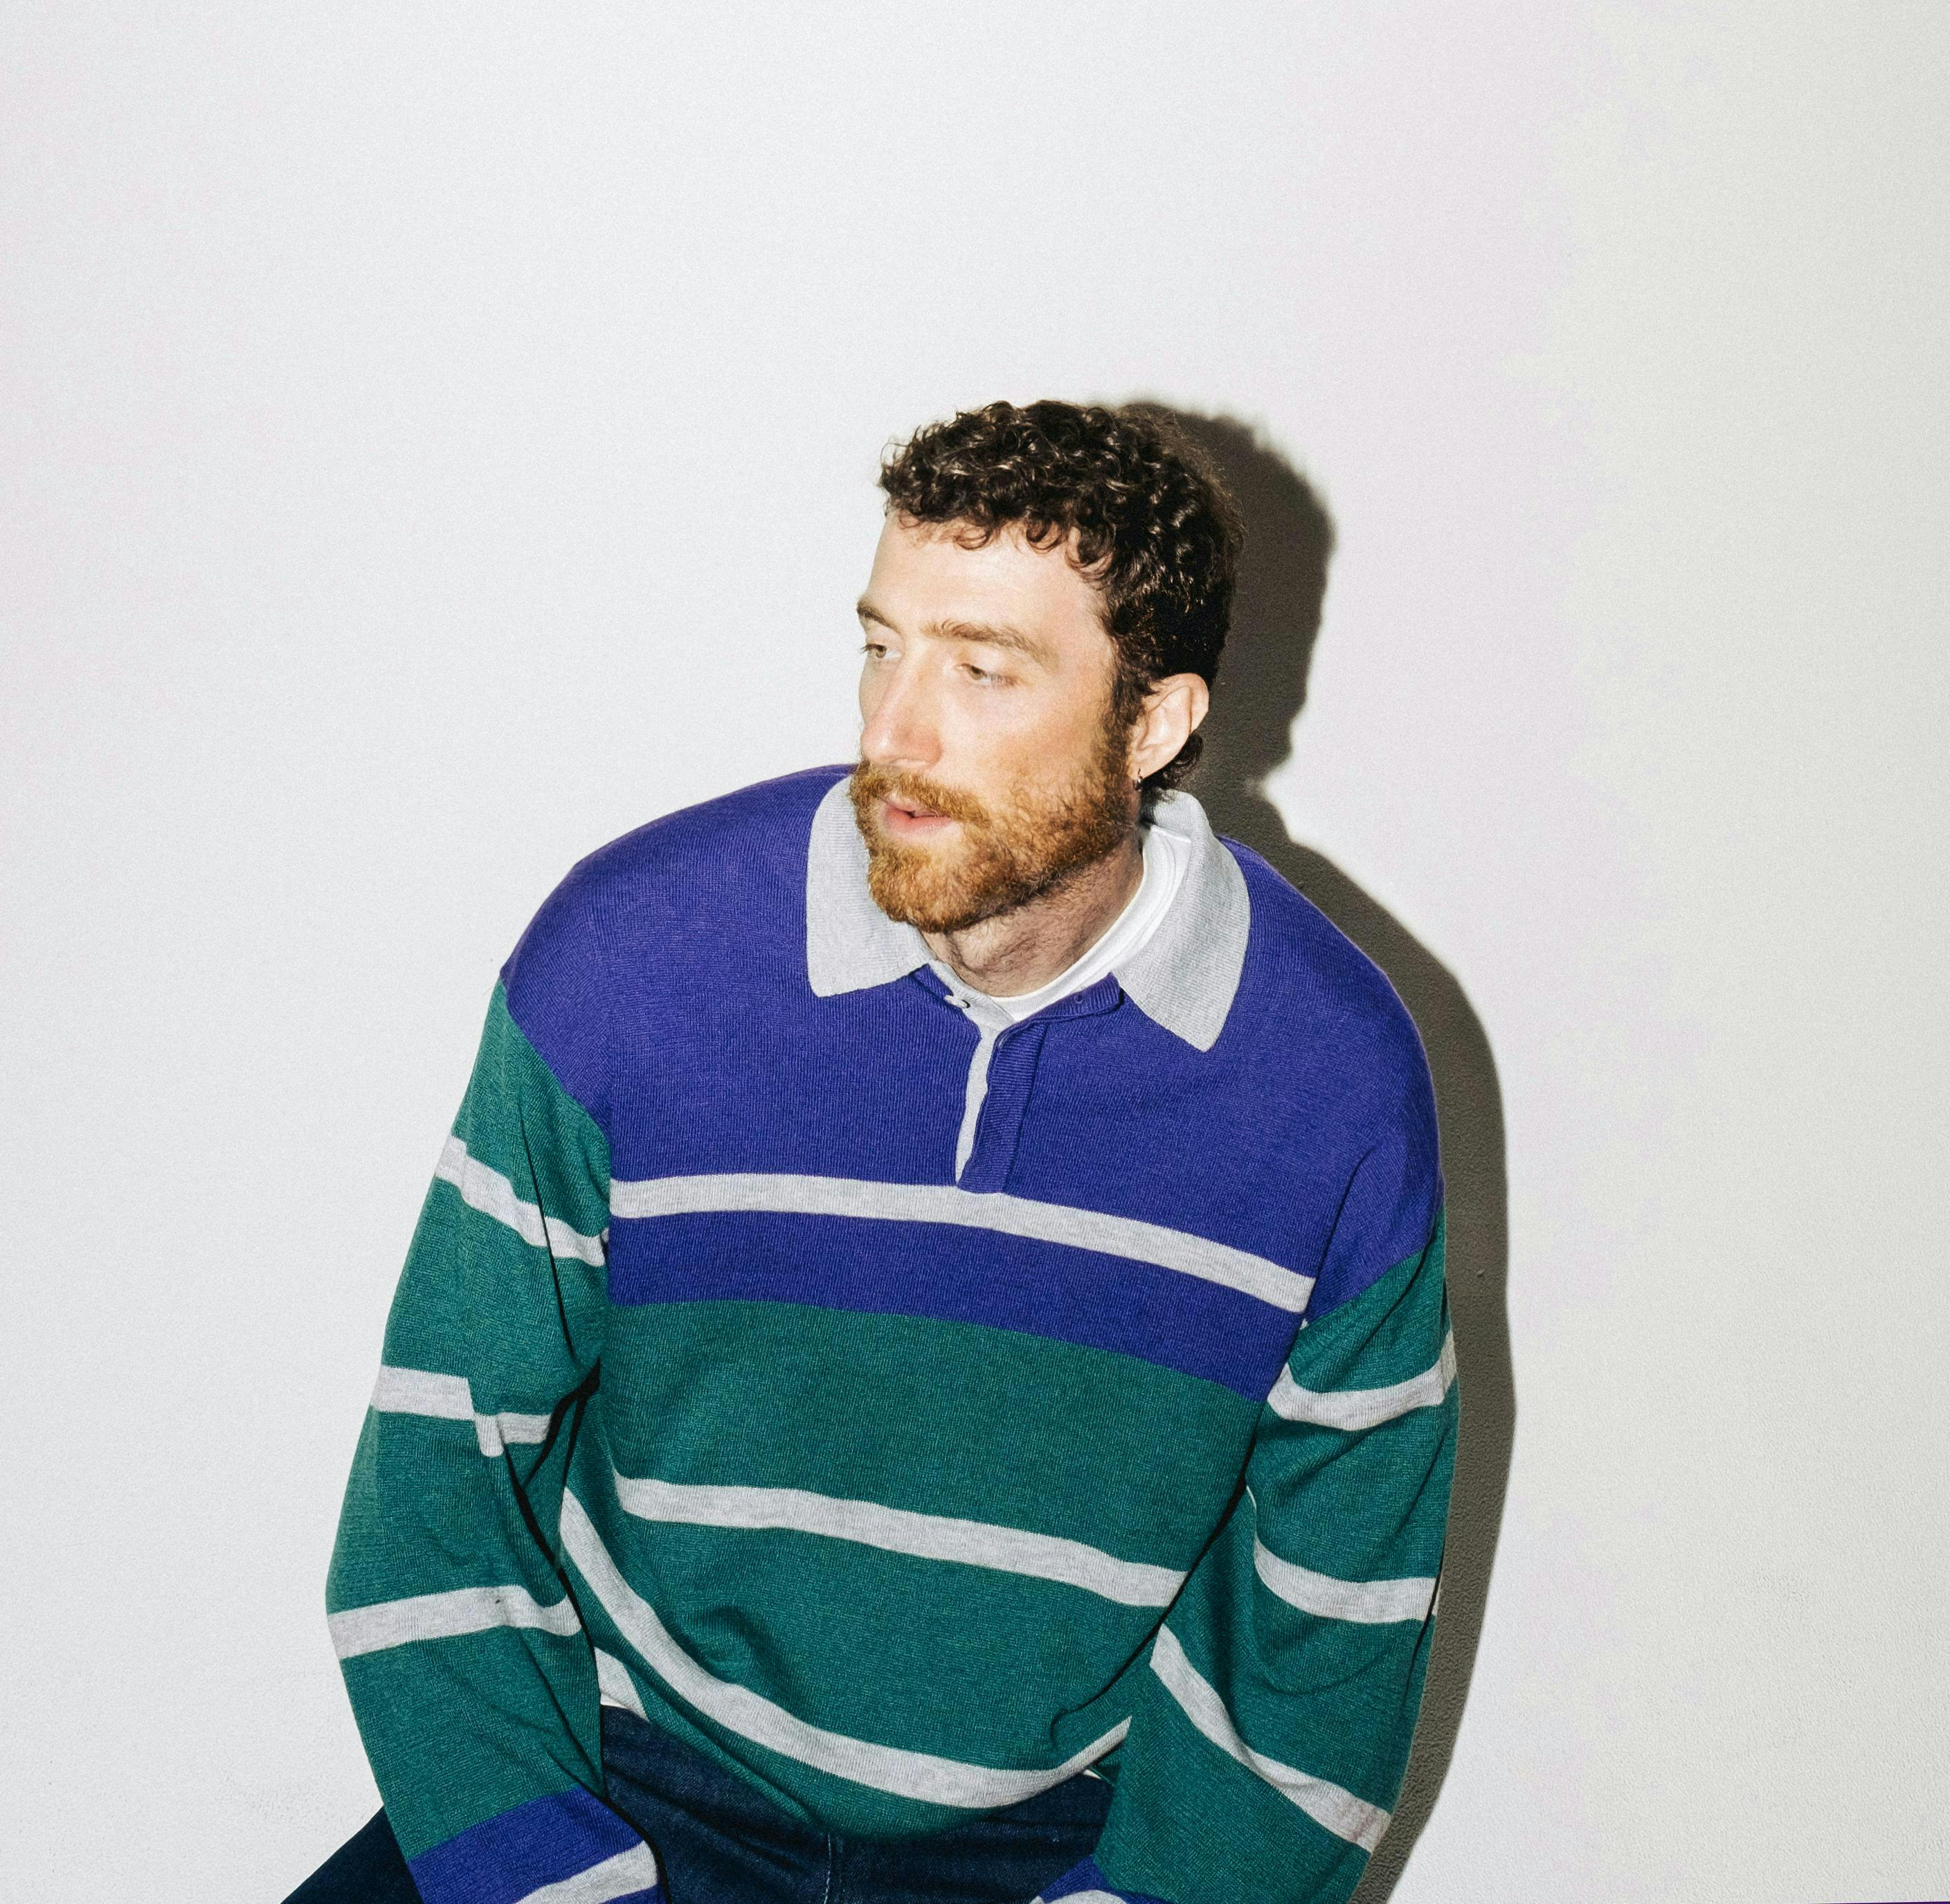 knitwear sweater face head person adult male man sweatshirt long sleeve